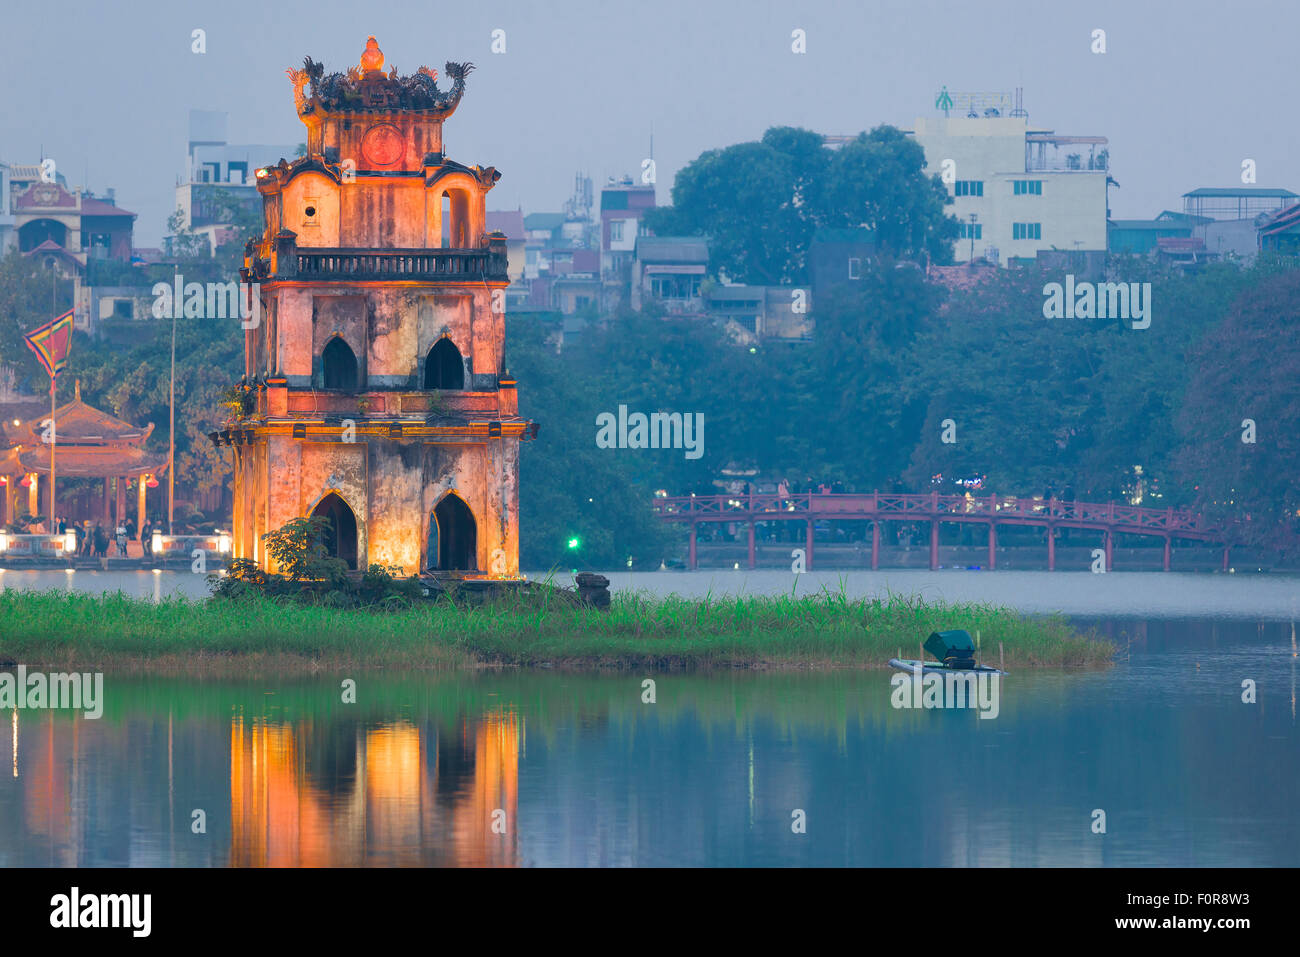 Hanoi Torre di tartaruga, vista al tramonto del XIX secolo pavilion noto come Torre di tartaruga situato nel lago Hoan Kiem nel centro di Hanoi, Vietnam. Foto Stock